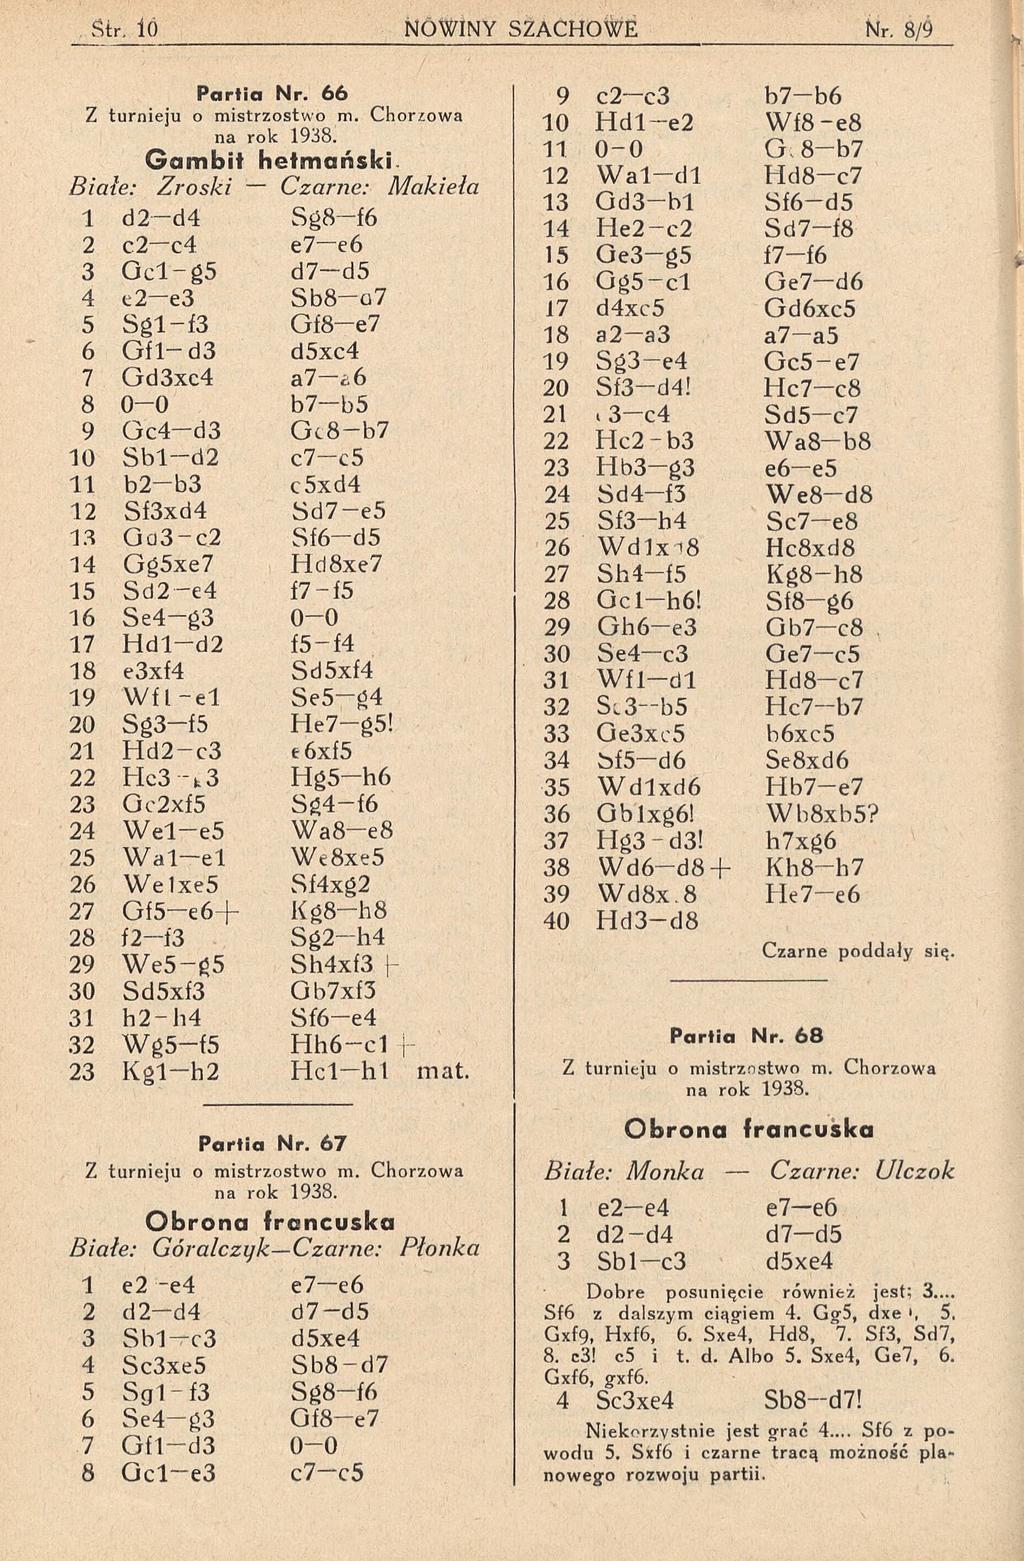 P a r tia N r. 6 6 Z turnieju o mistrzostwo m. Chorzowa na rok 1938. G am bit hetmański.